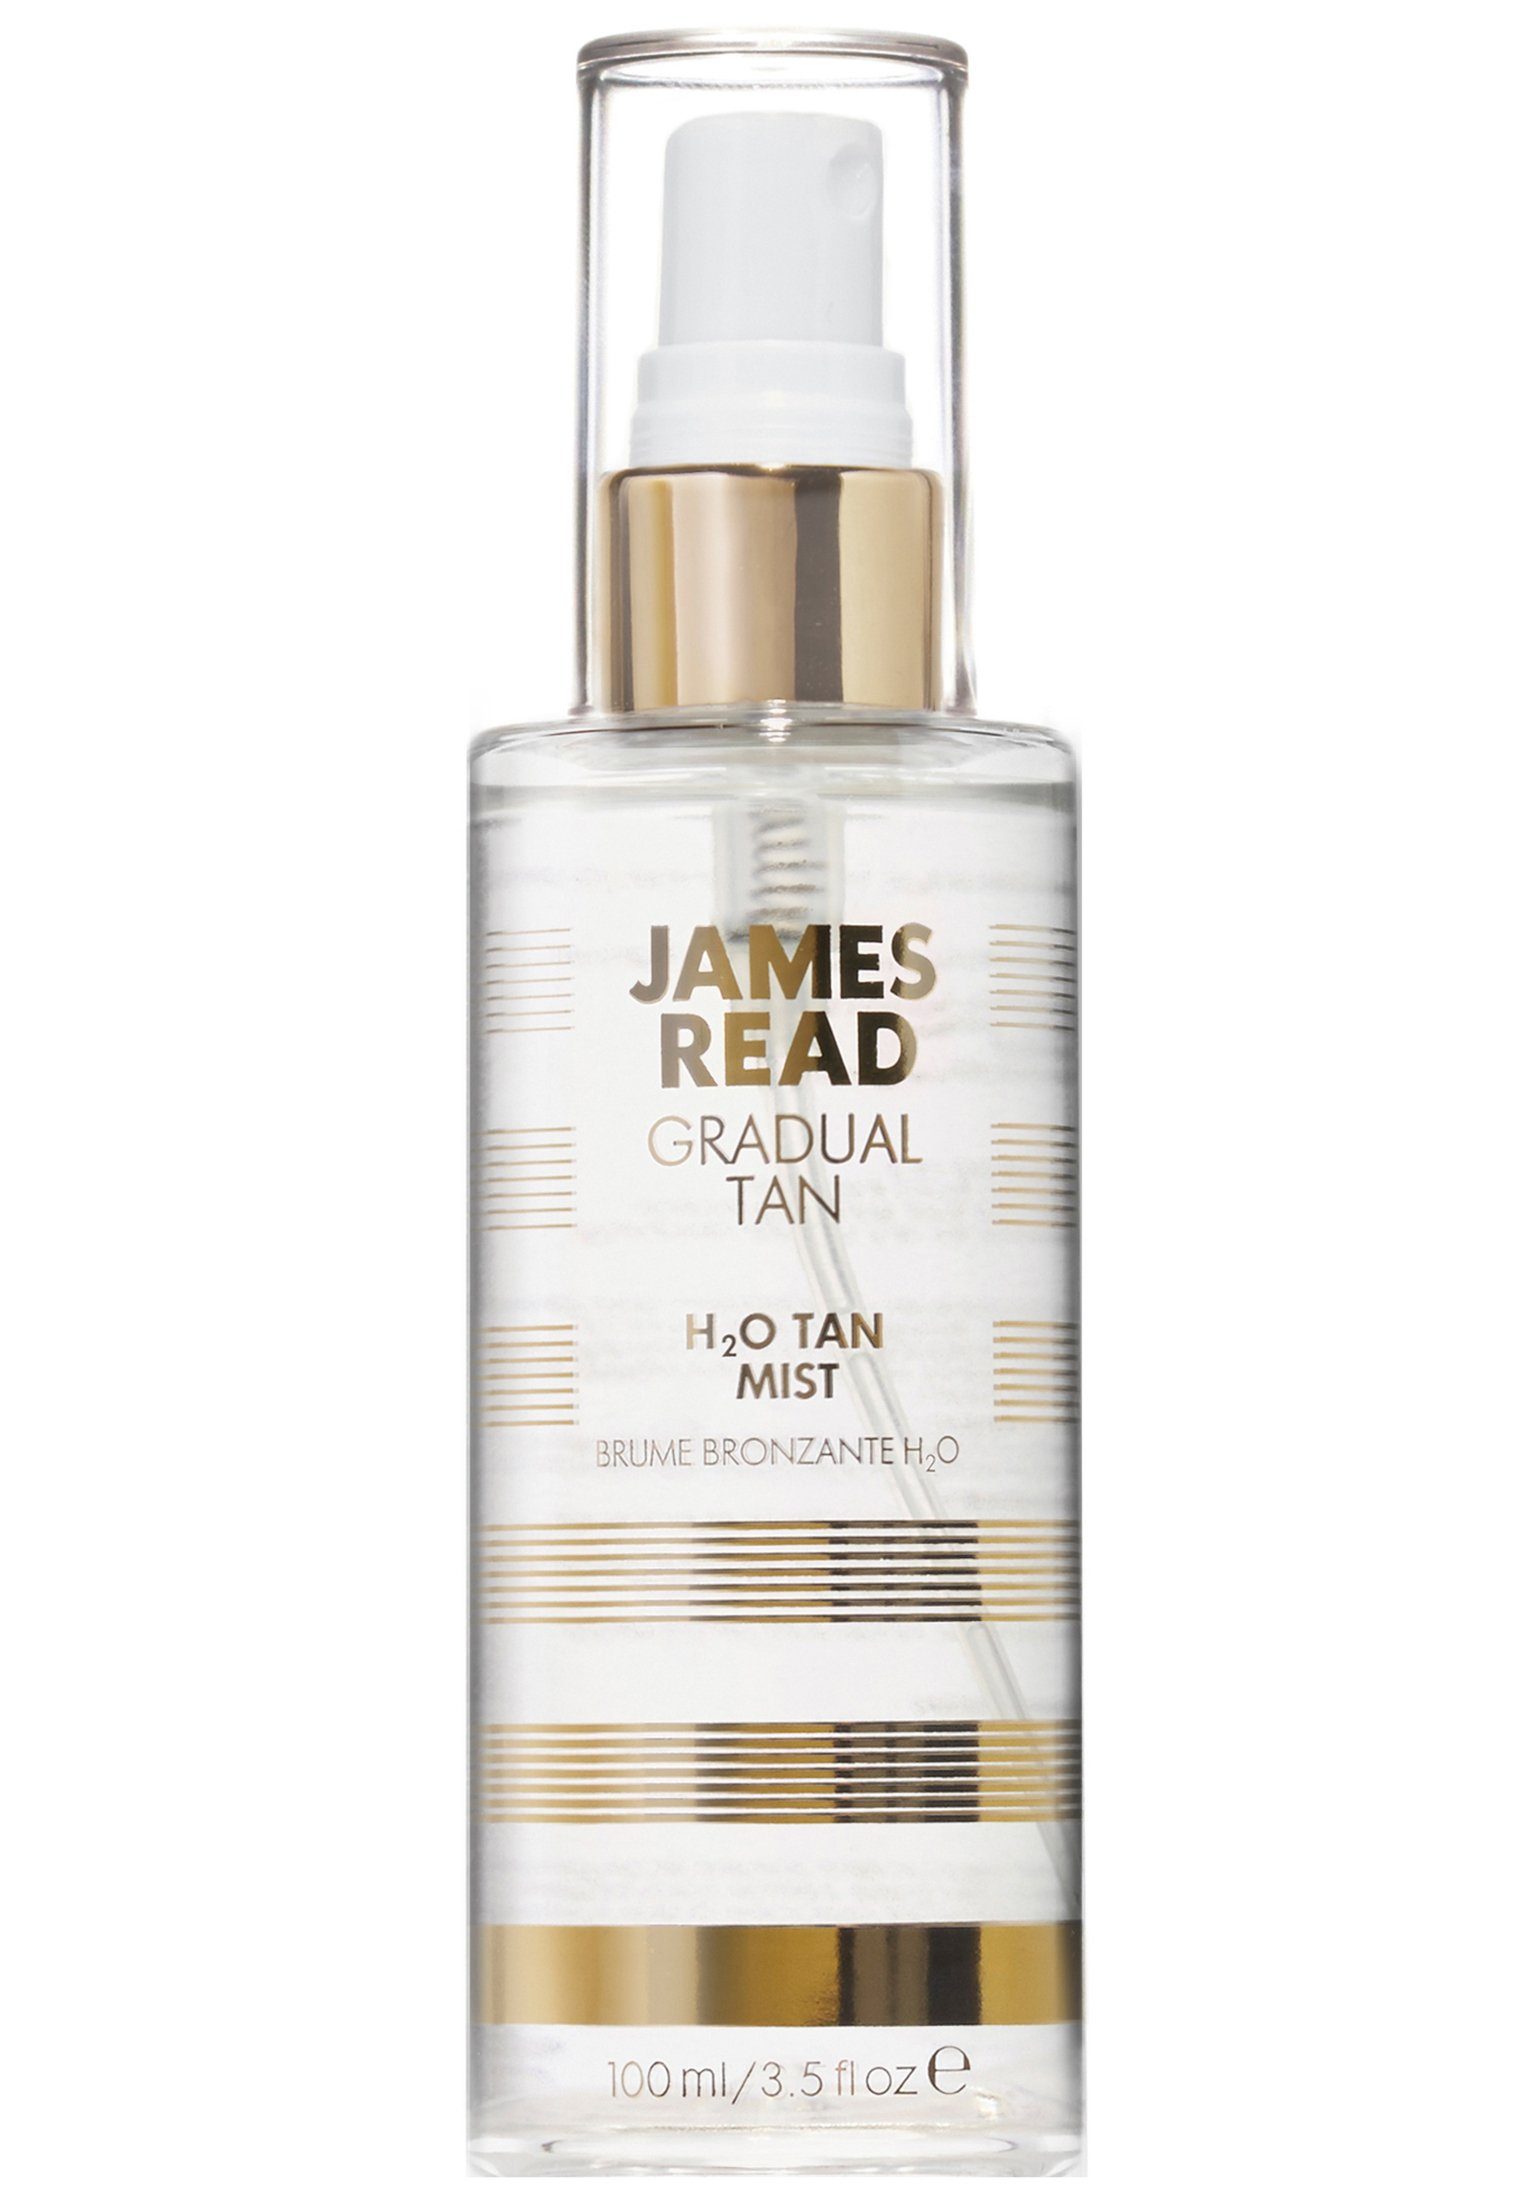 James Read Gesichts- und Körperspray James Read Gesichtsspray H2O Tan Mist Erfrischendes, pflegendes Gesichtsspray mit Bräunungseffekt!